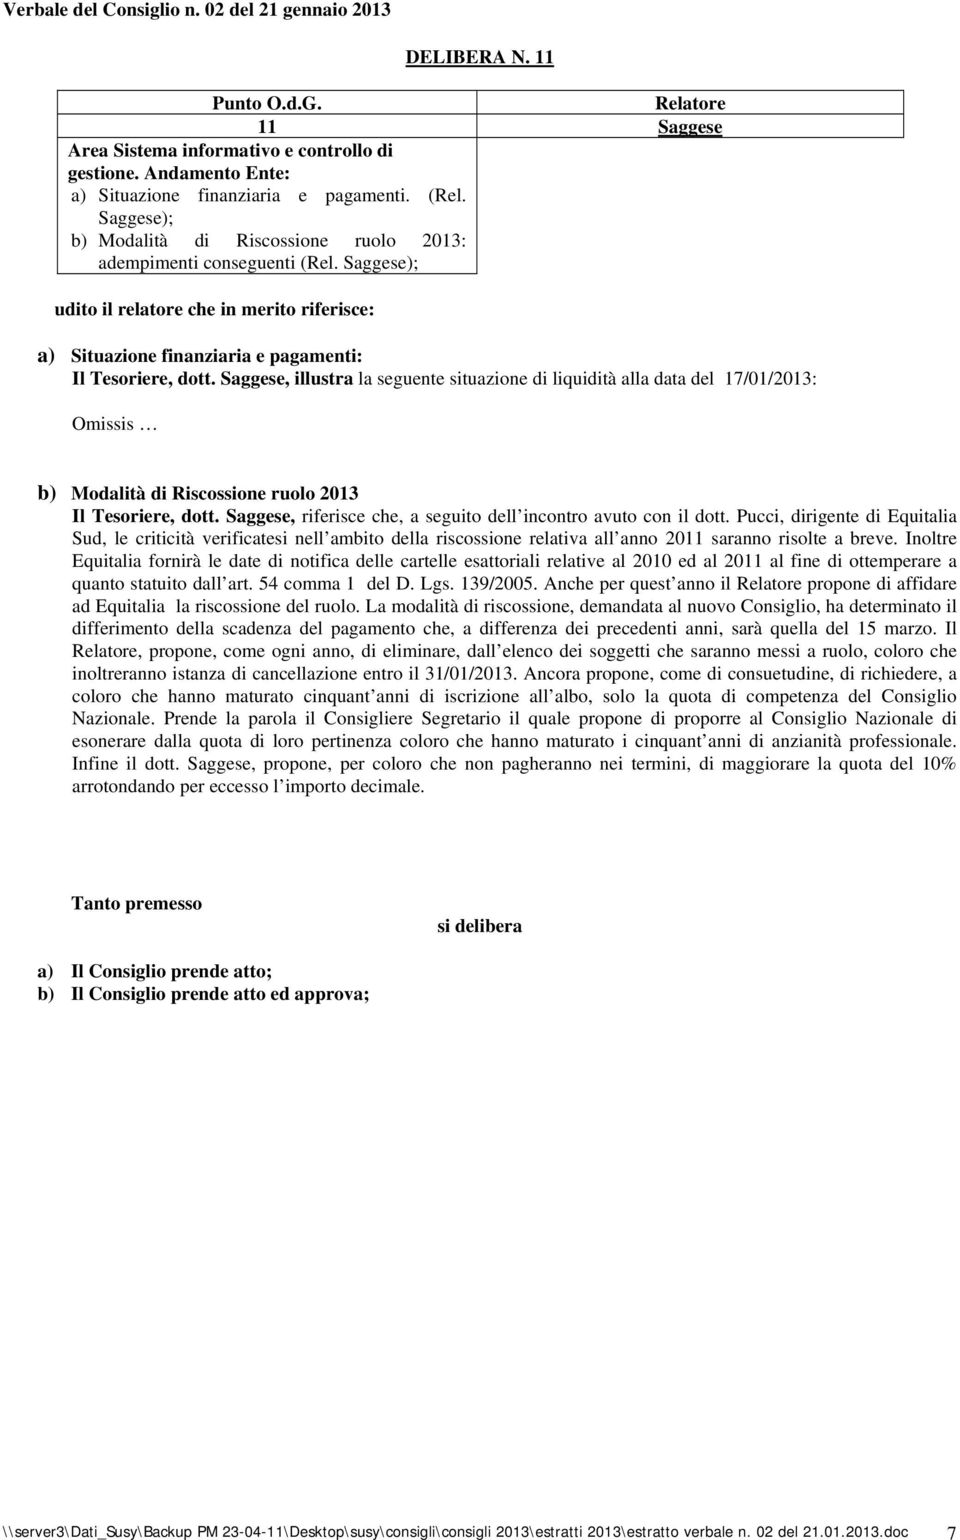 Saggese, illustra la seguente situazione di liquidità alla data del 17/01/2013: Omissis b) Modalità di Riscossione ruolo 2013 Il Tesoriere, dott.